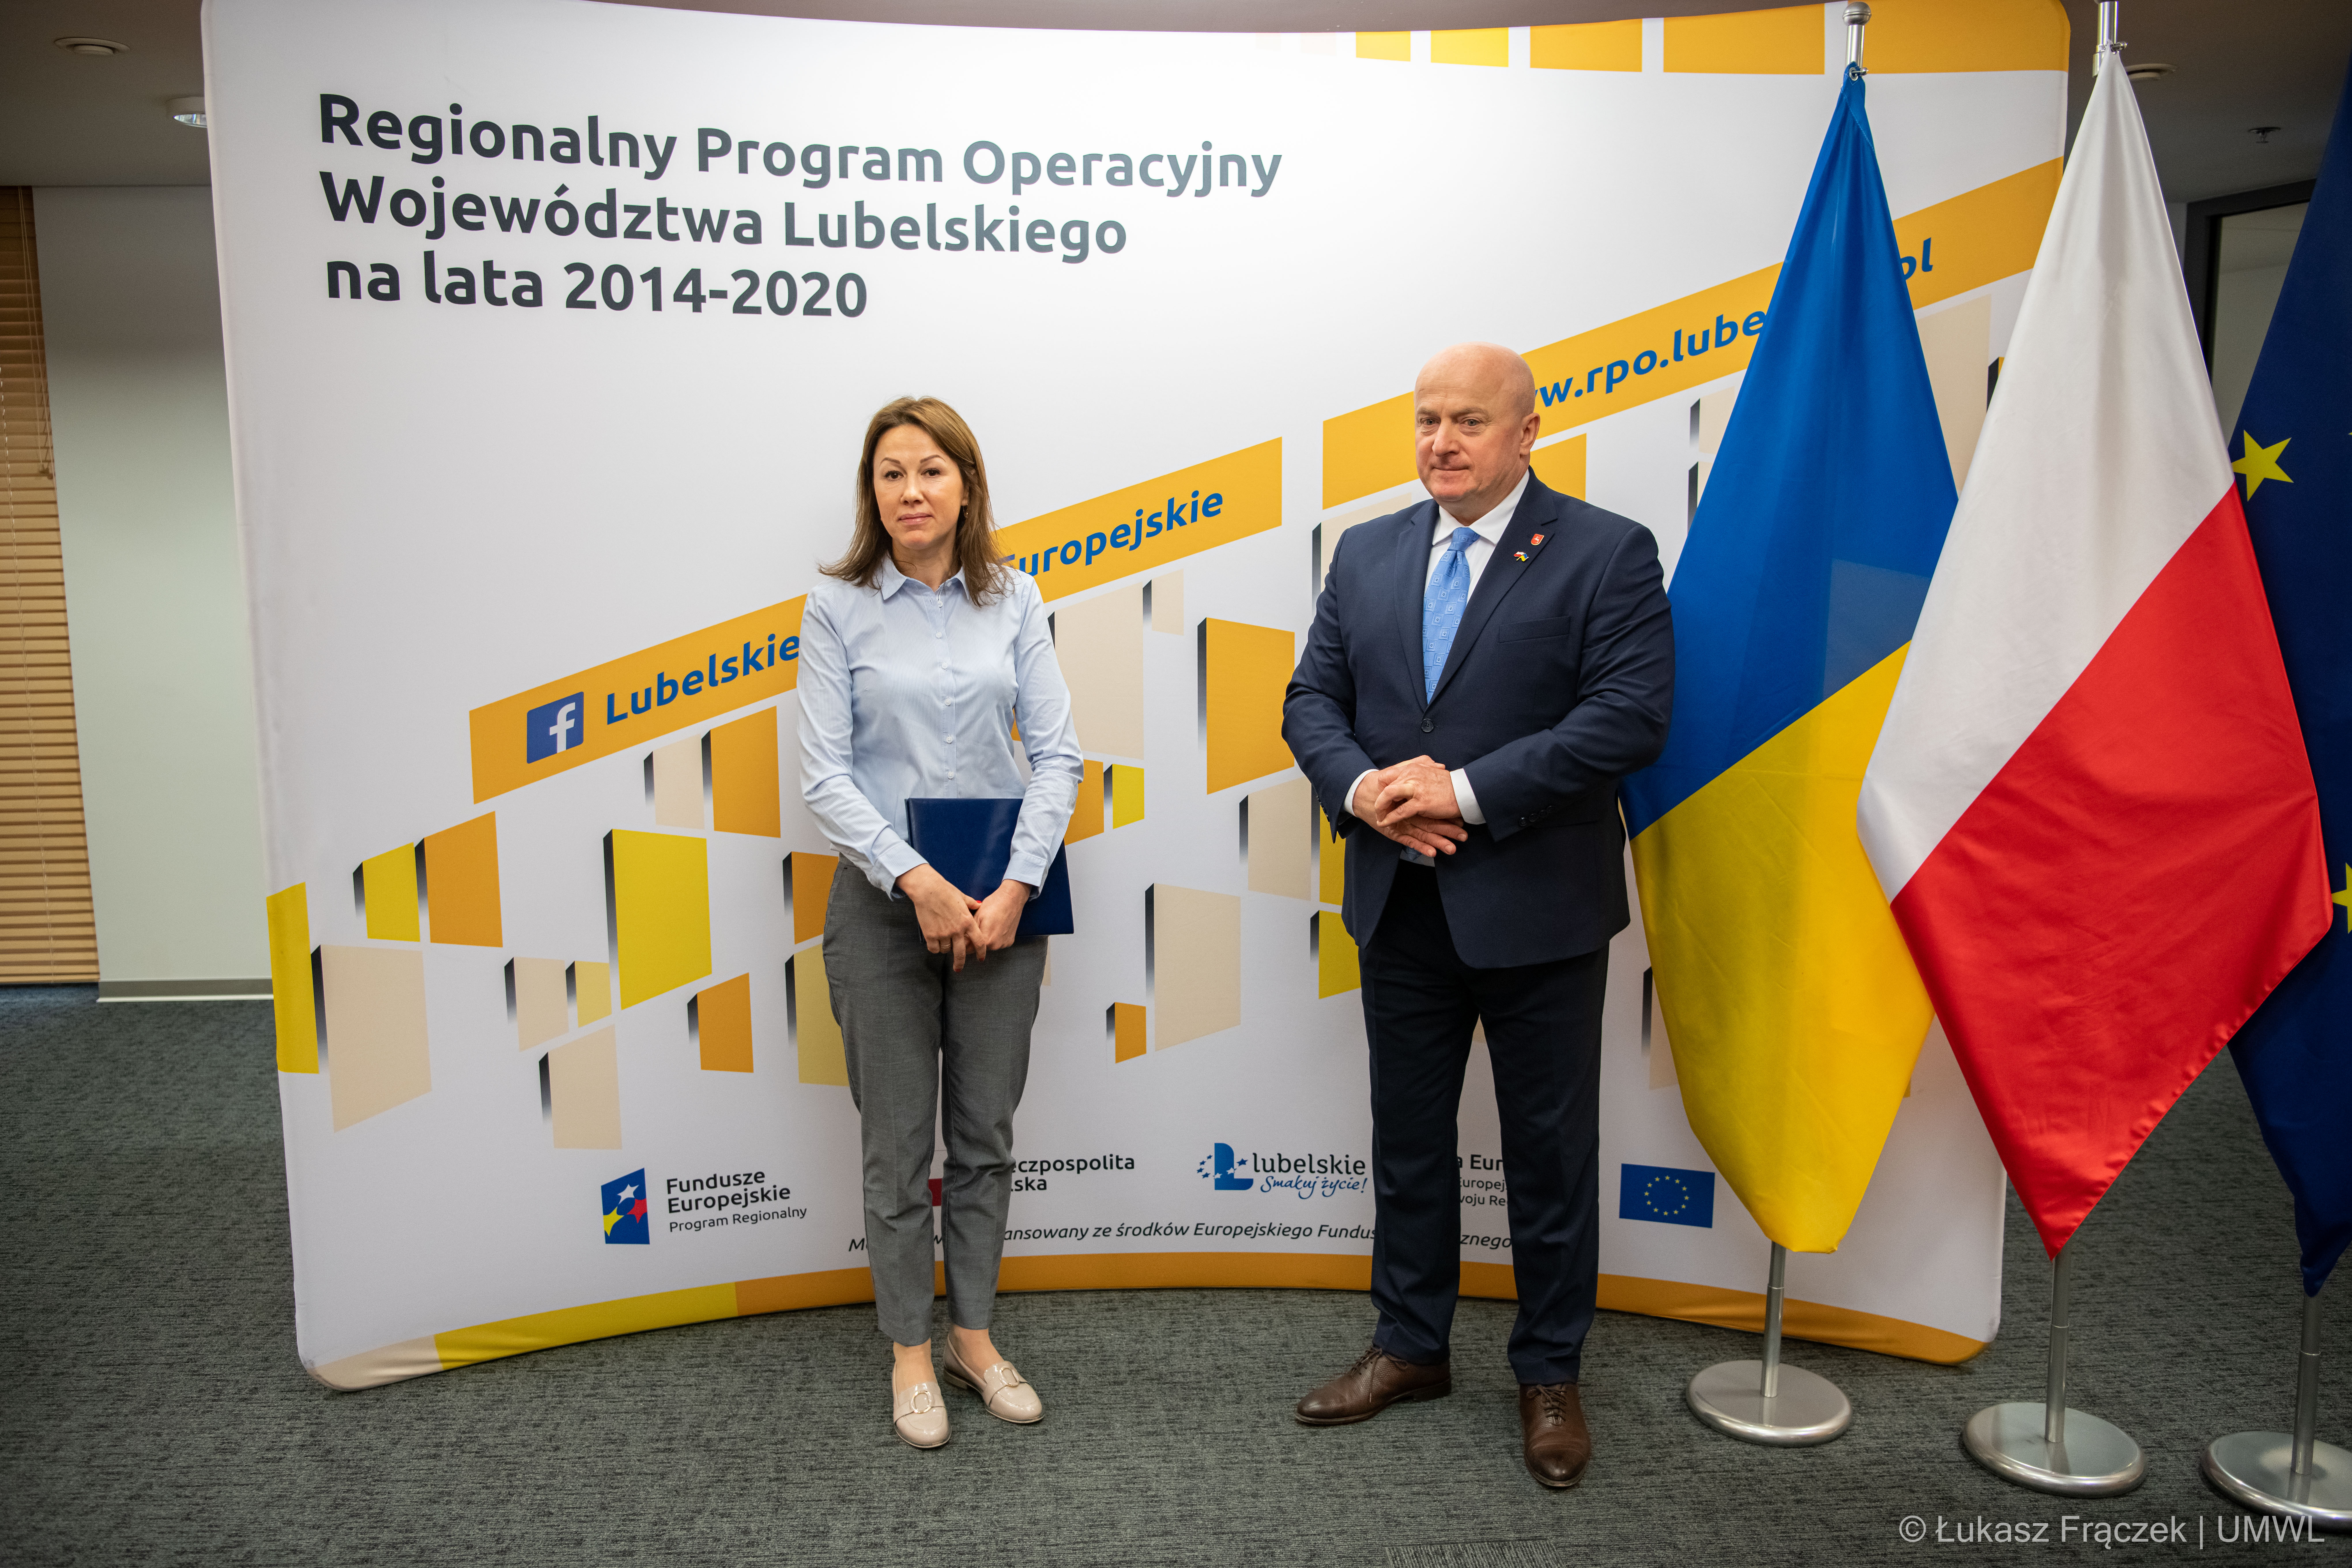 Zarząd Województwa Lubelskiego przeznaczył blisko 6,5 mln zł z funduszy unijnych na wsparcie uchodźców